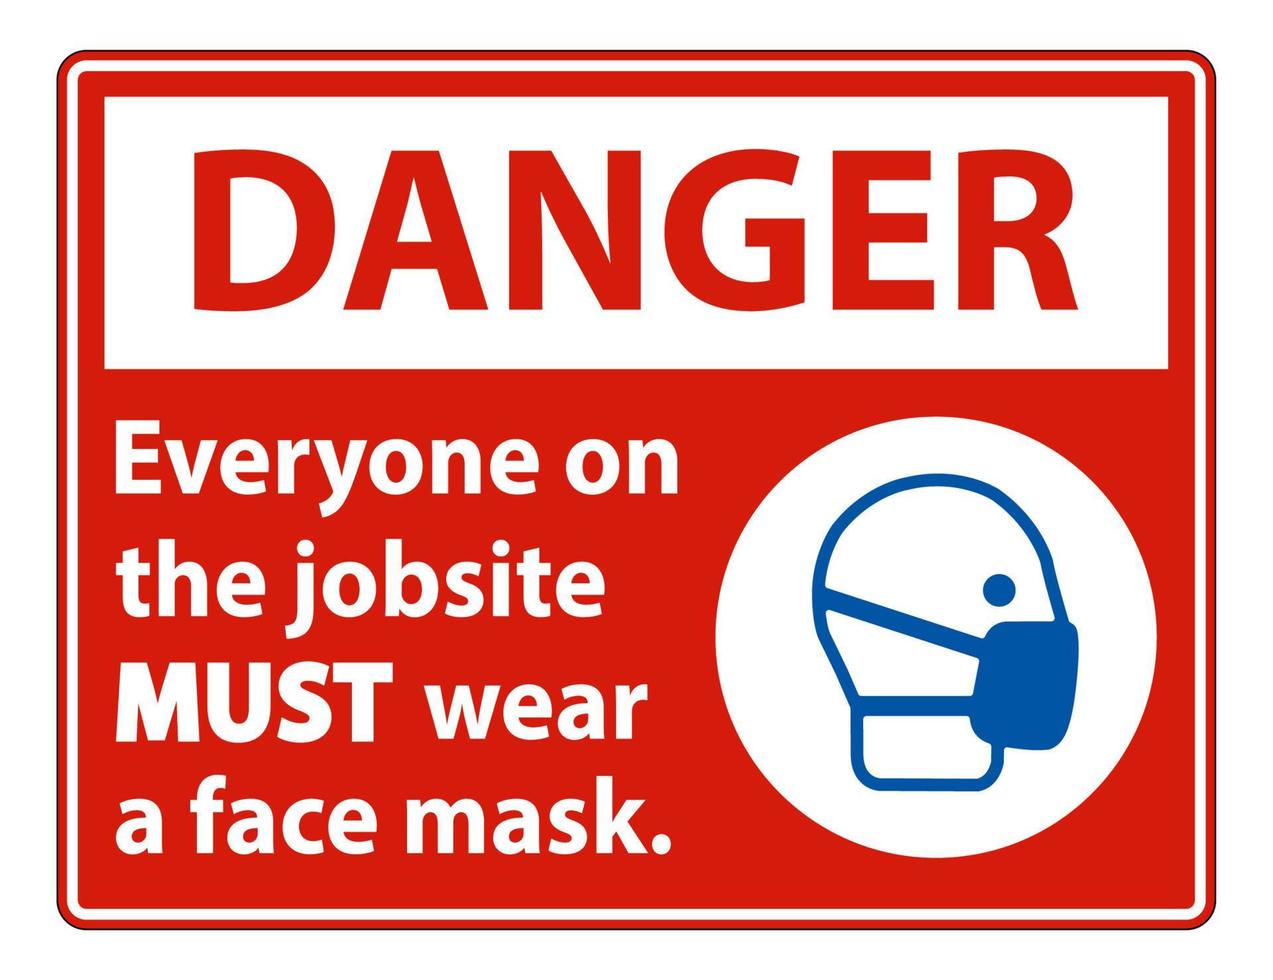 Danger porter un signe de masque facial isoler sur fond blanc vecteur